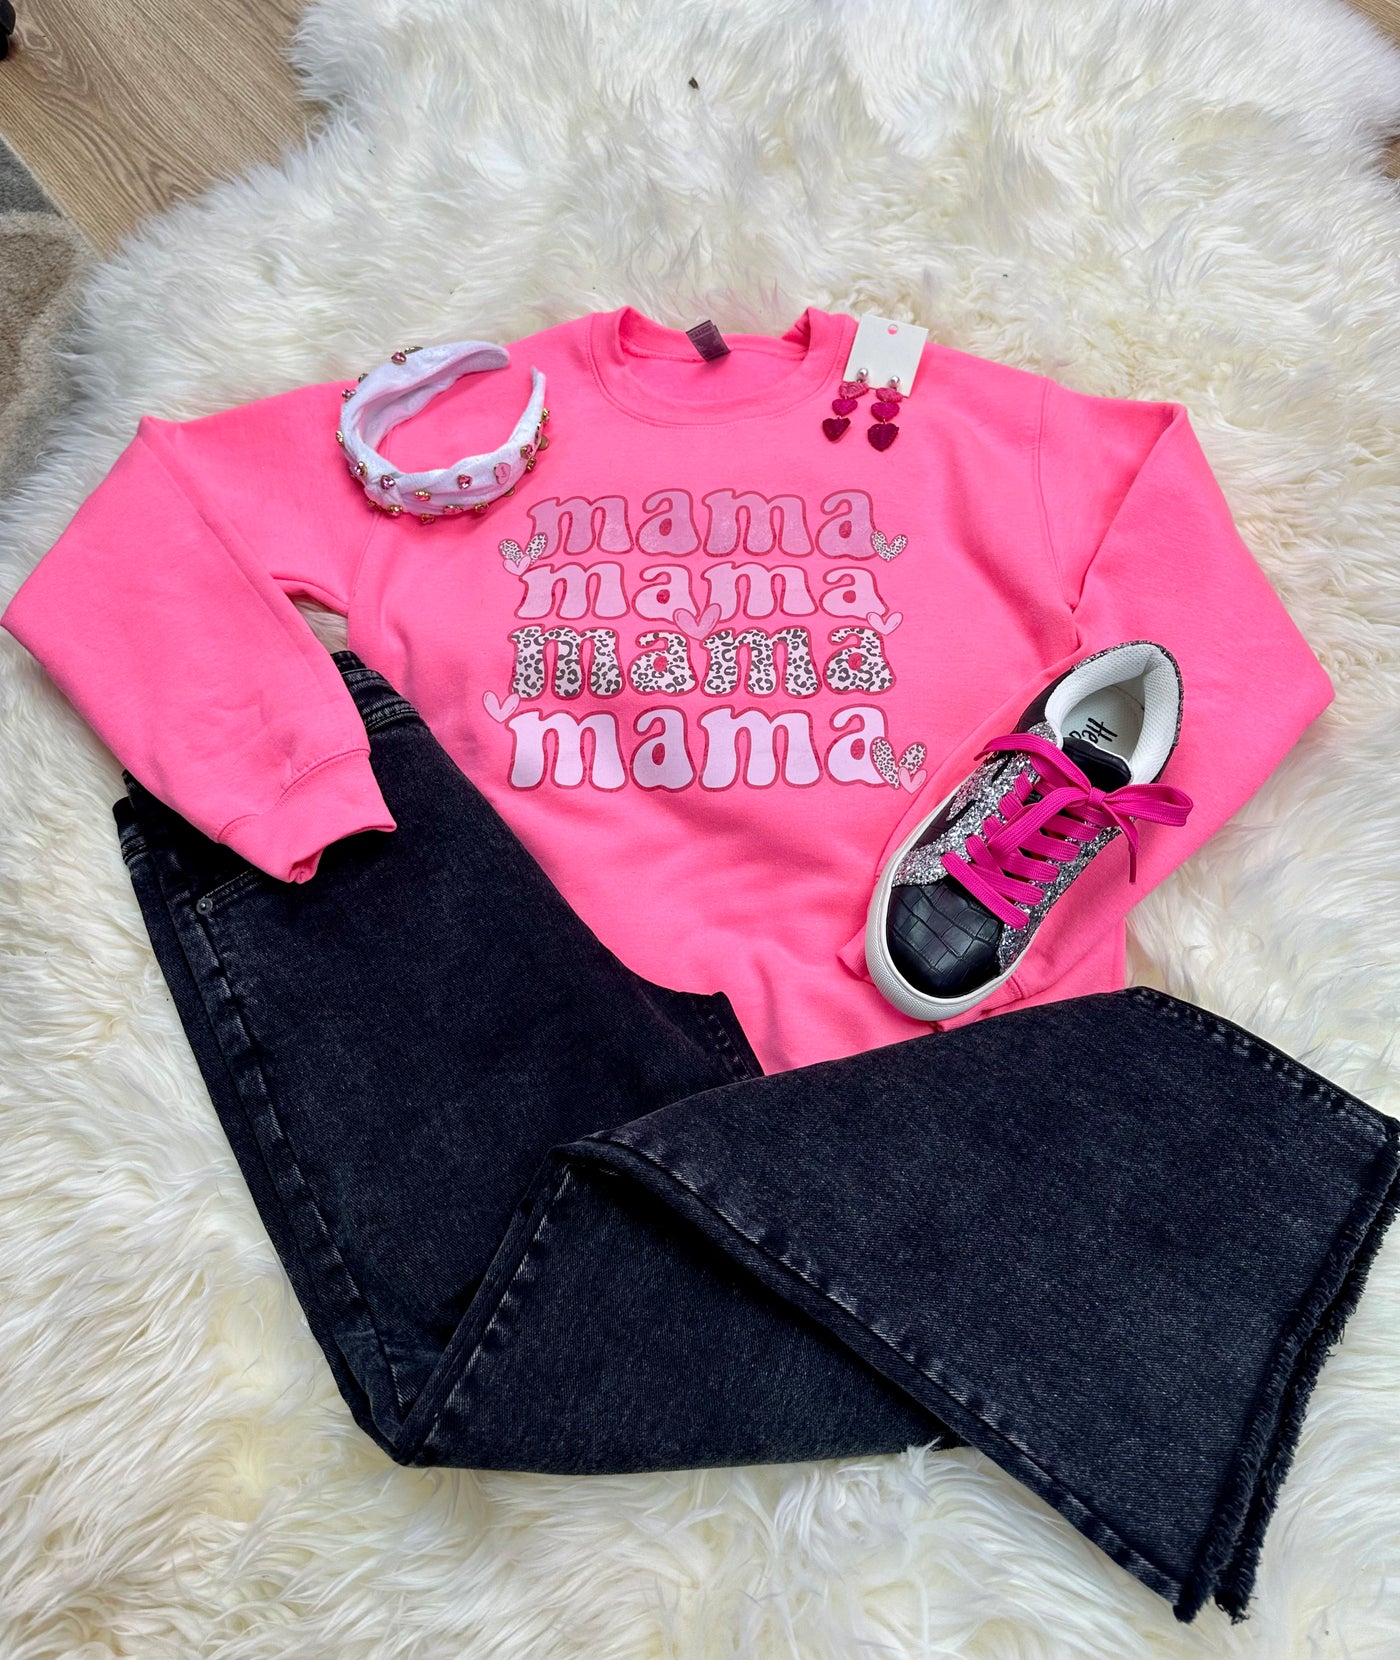 Mama Sweatshirt on Neon Pink